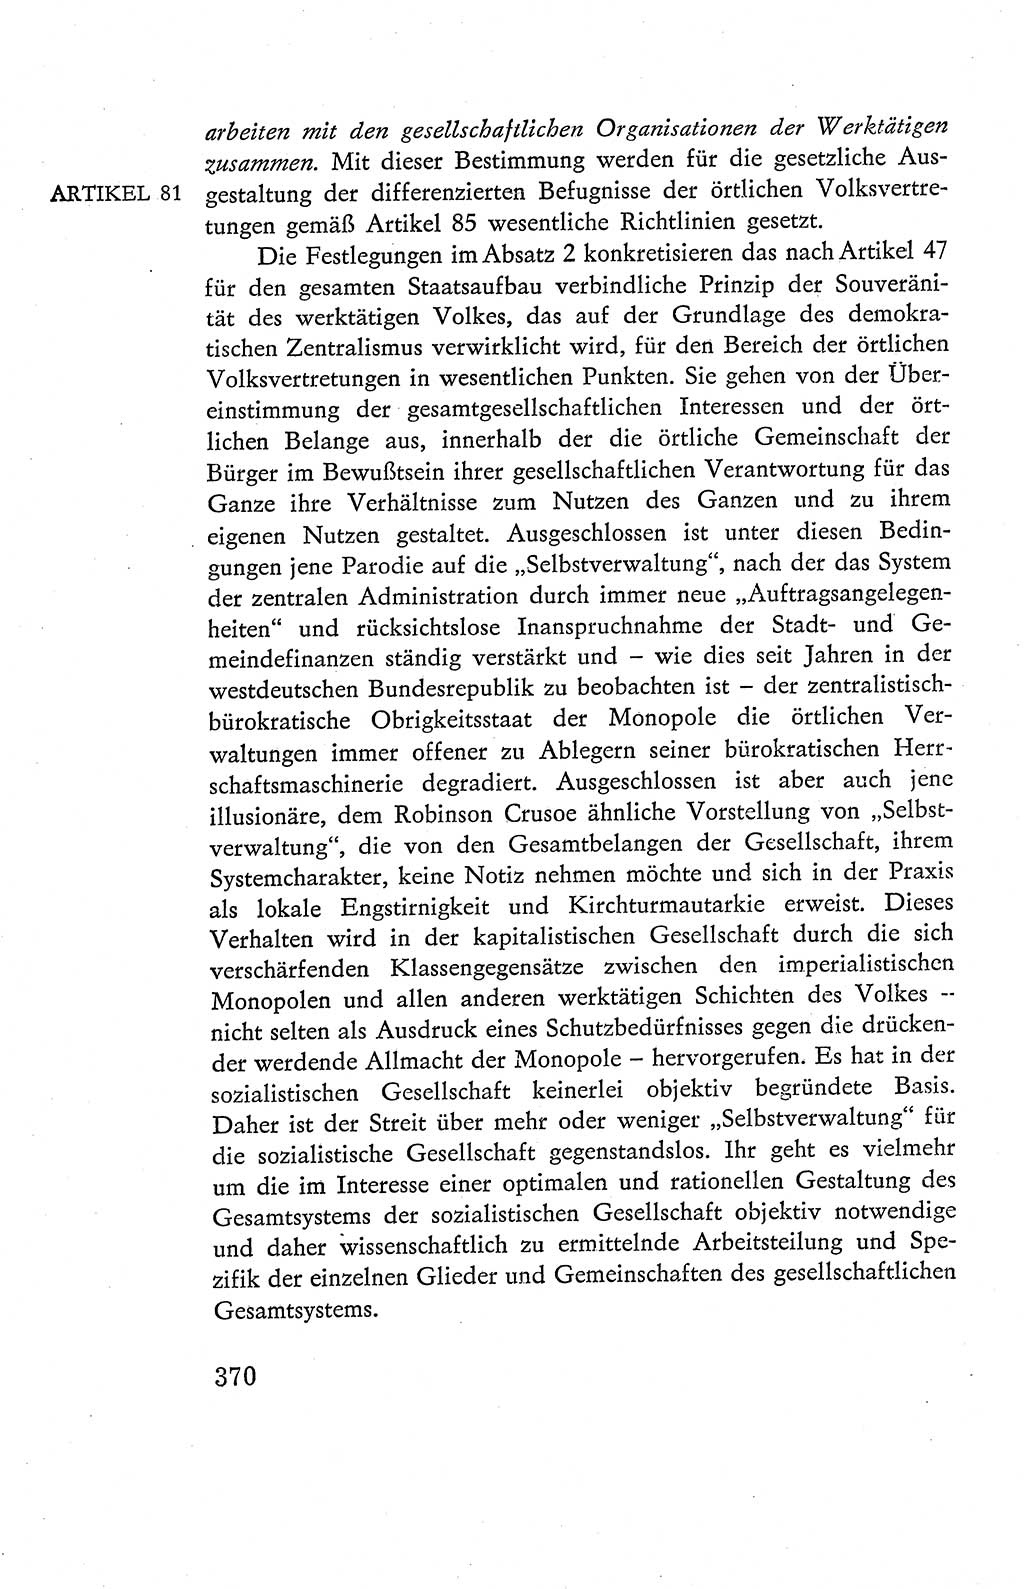 Verfassung der Deutschen Demokratischen Republik (DDR), Dokumente, Kommentar 1969, Band 2, Seite 370 (Verf. DDR Dok. Komm. 1969, Bd. 2, S. 370)